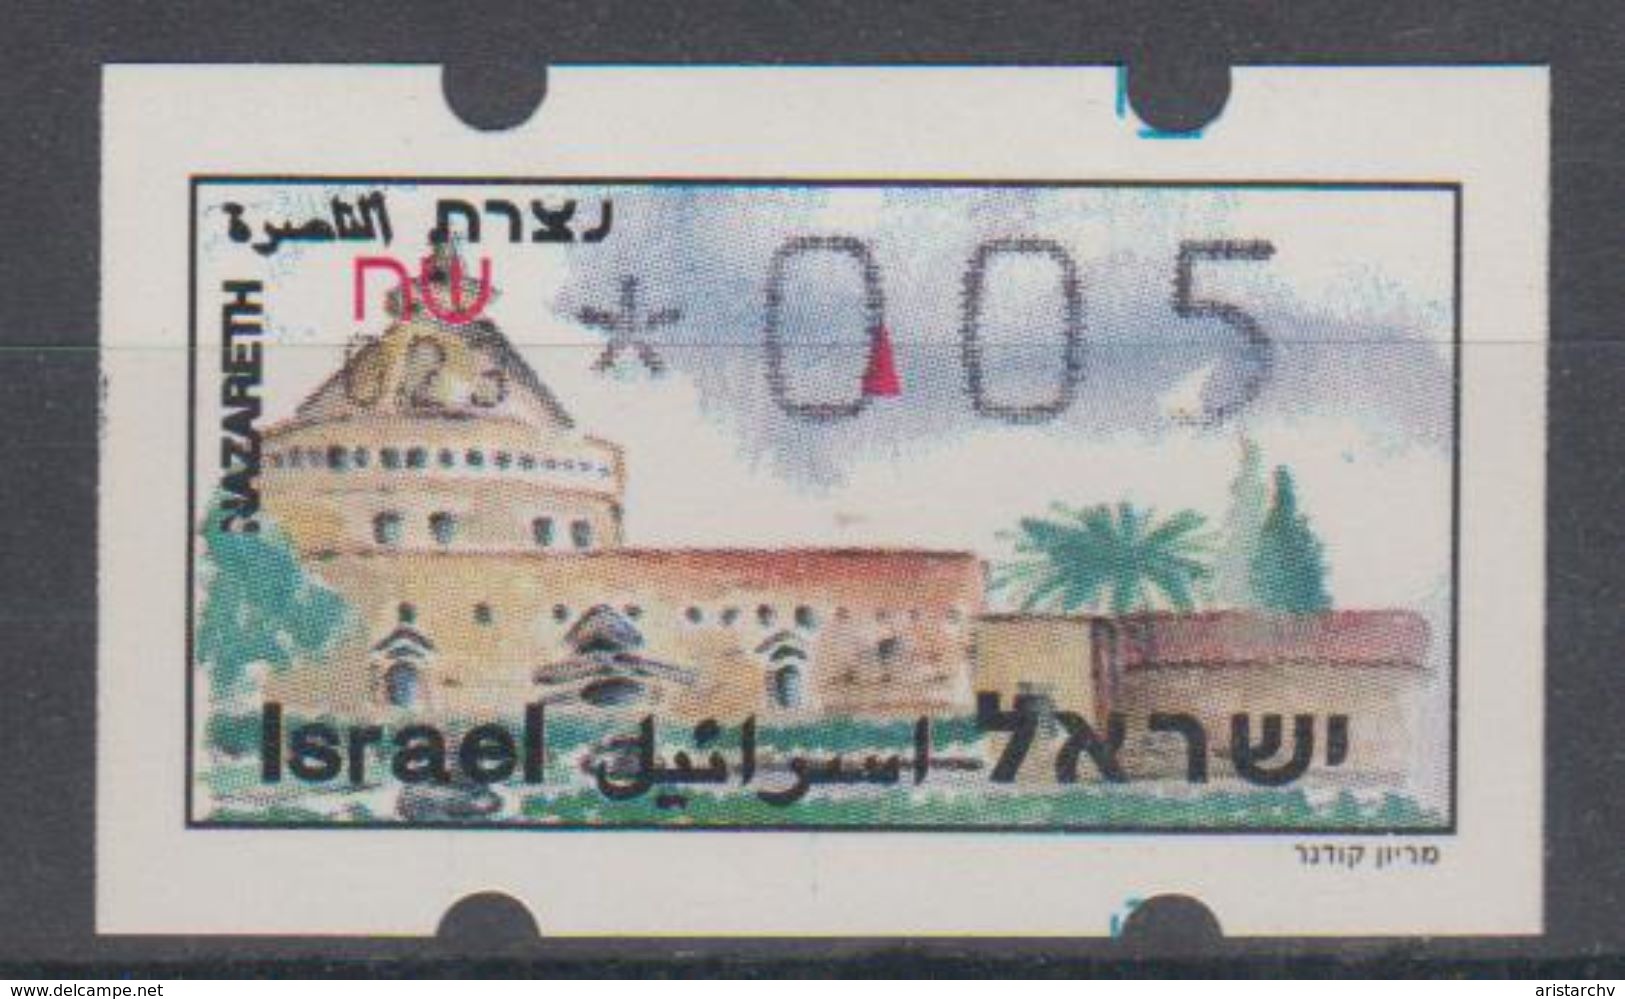 ISRAEL 1994 SIMA ATM NAZARETH 0.05 SHEKELS NUMBER 023 - Vignettes D'affranchissement (Frama)